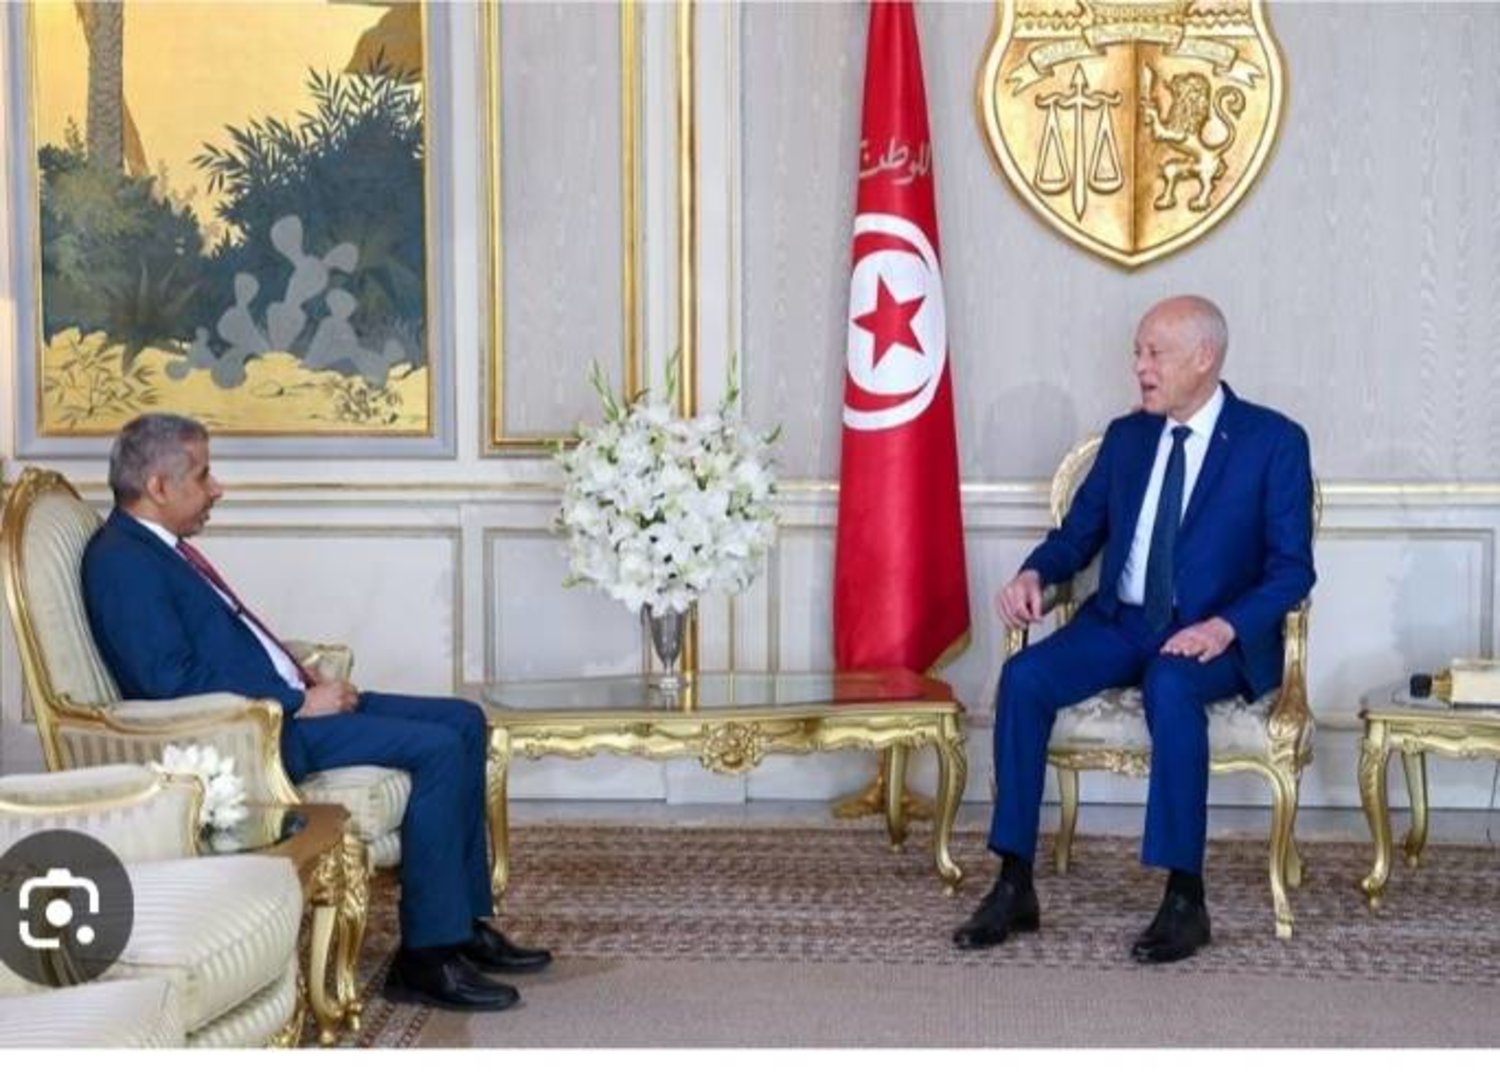 الرئيس التونسي يلتقي الأمين العام لمجلس وزراء الداخلية العرب الذي يوجد مقره بتونس (أرشيف الرئاسة التونسية)